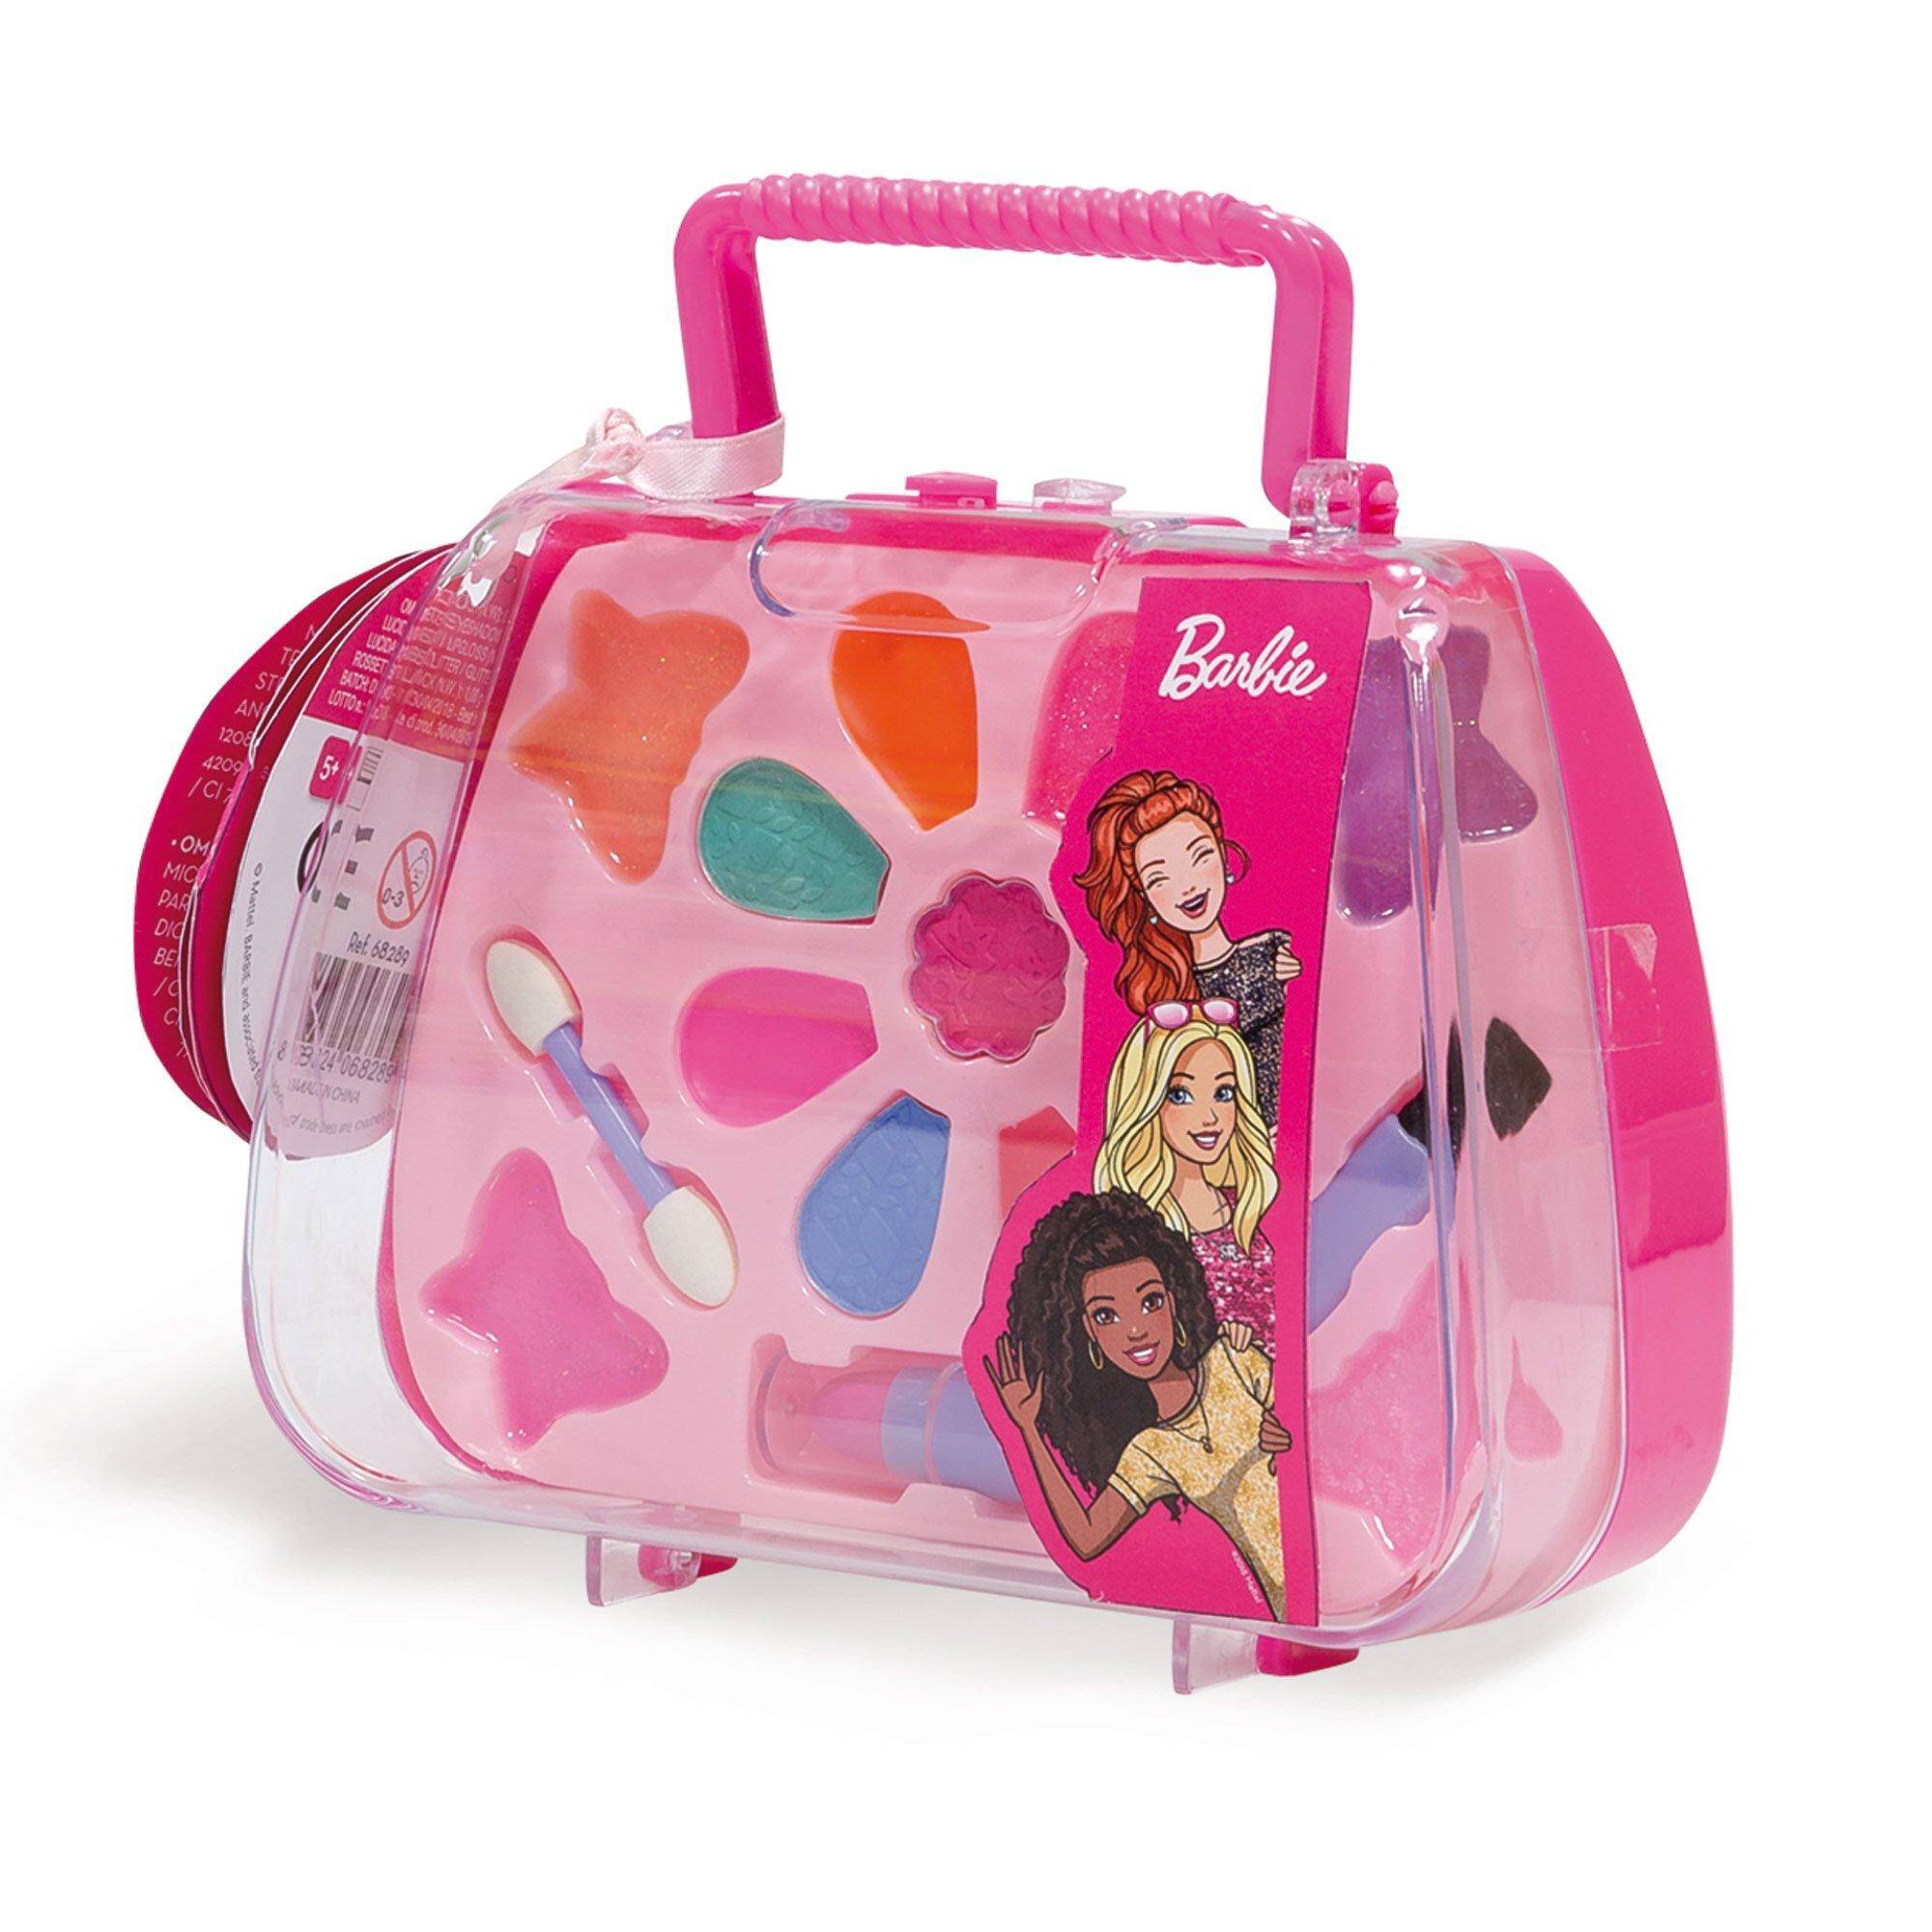 Lisciani Barbie kosmetyki w pudełku 304-95445 1 szt.mix